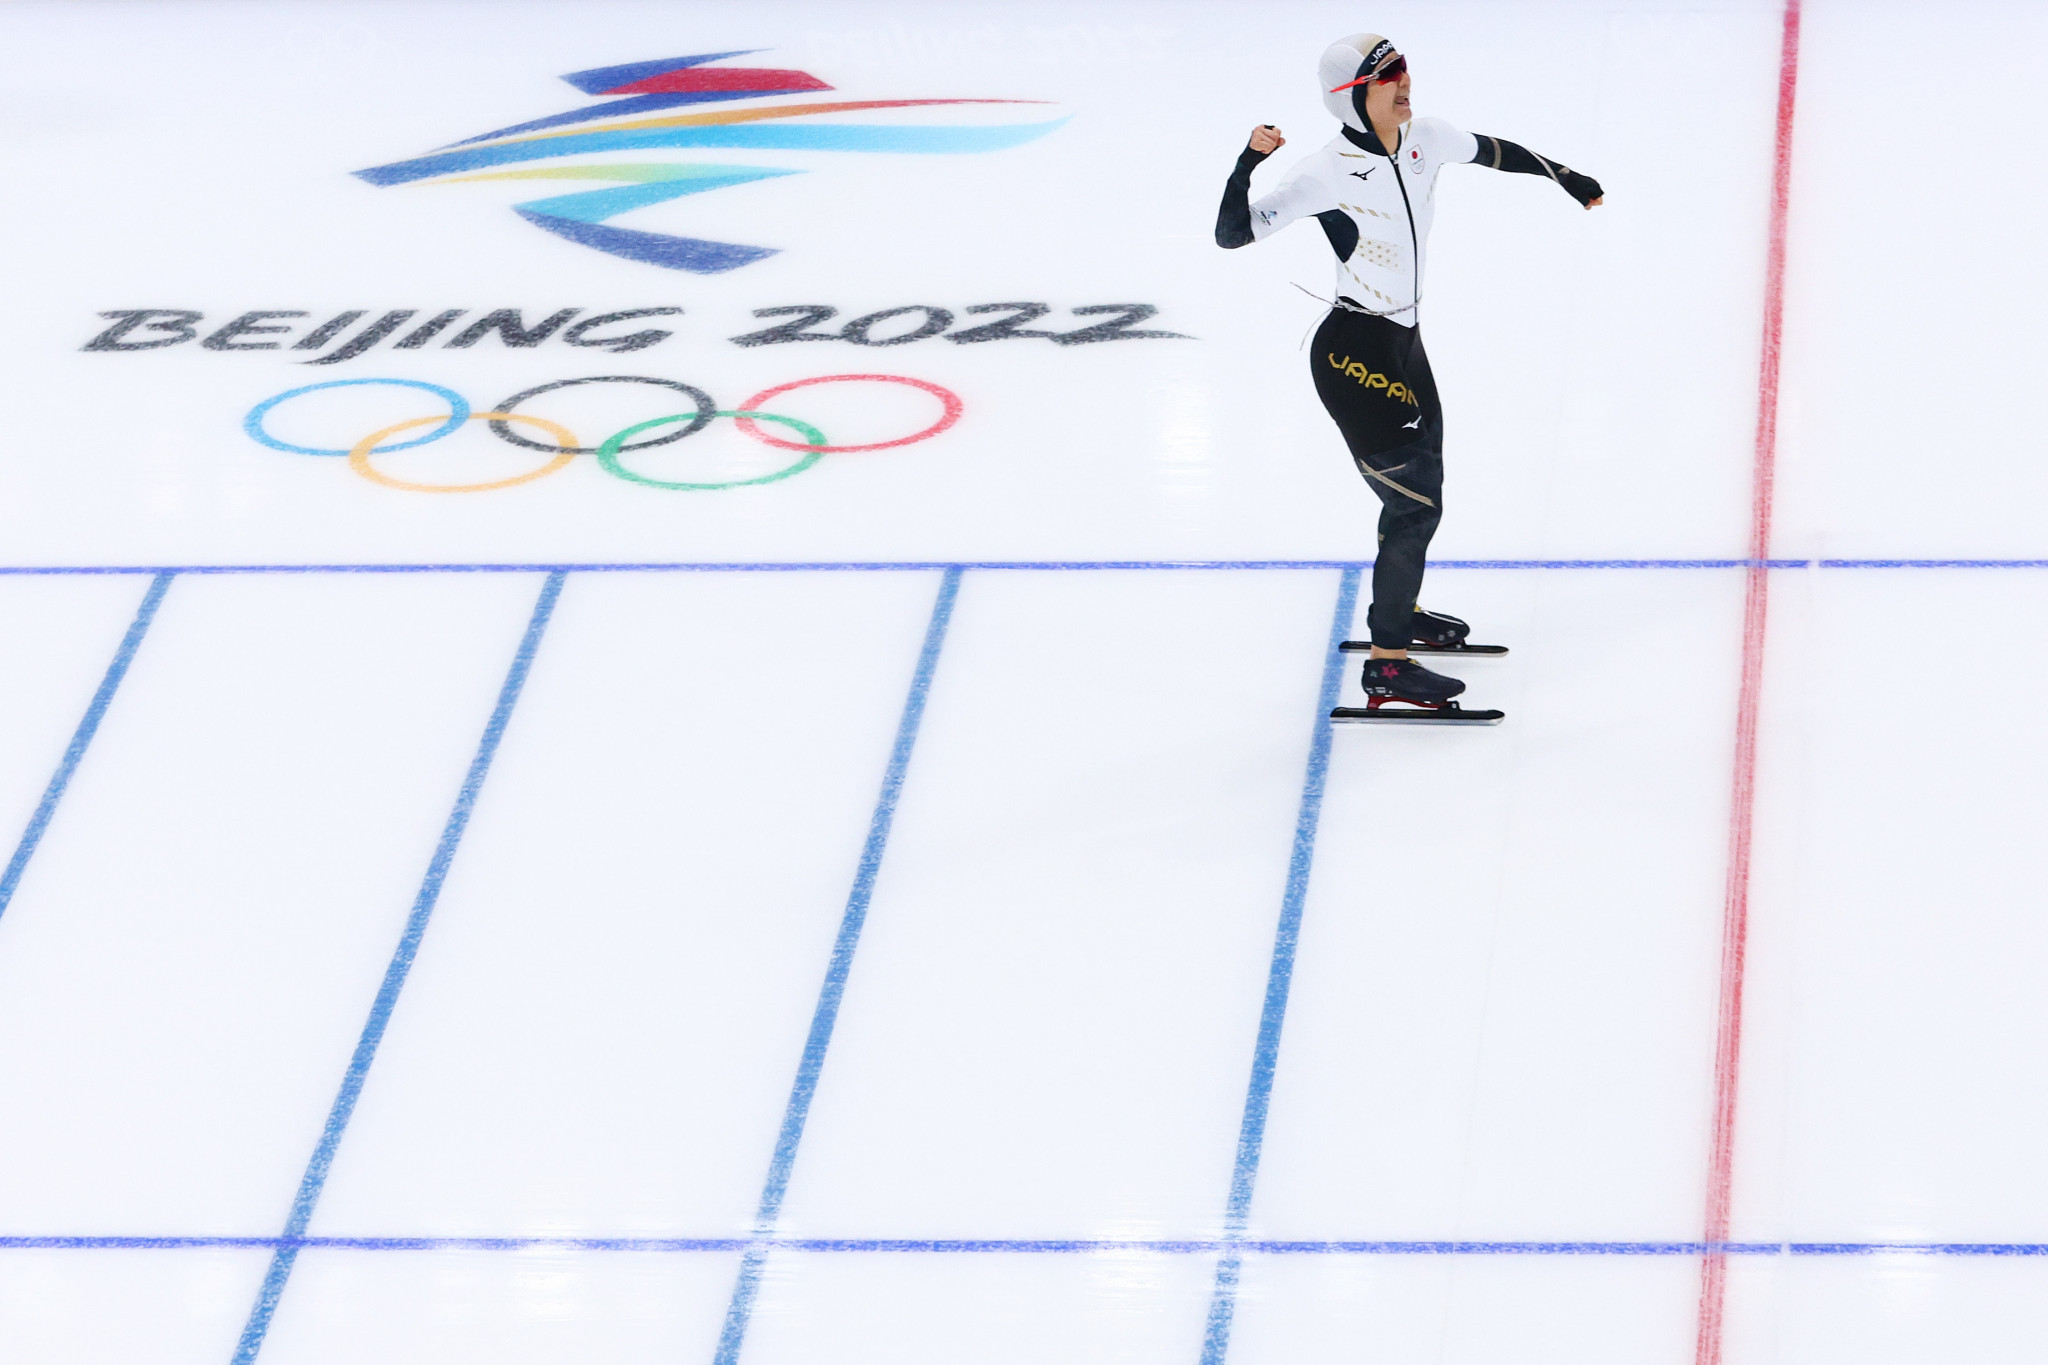 Individual gold at last for Takagi in speed skating at Beijing 2022